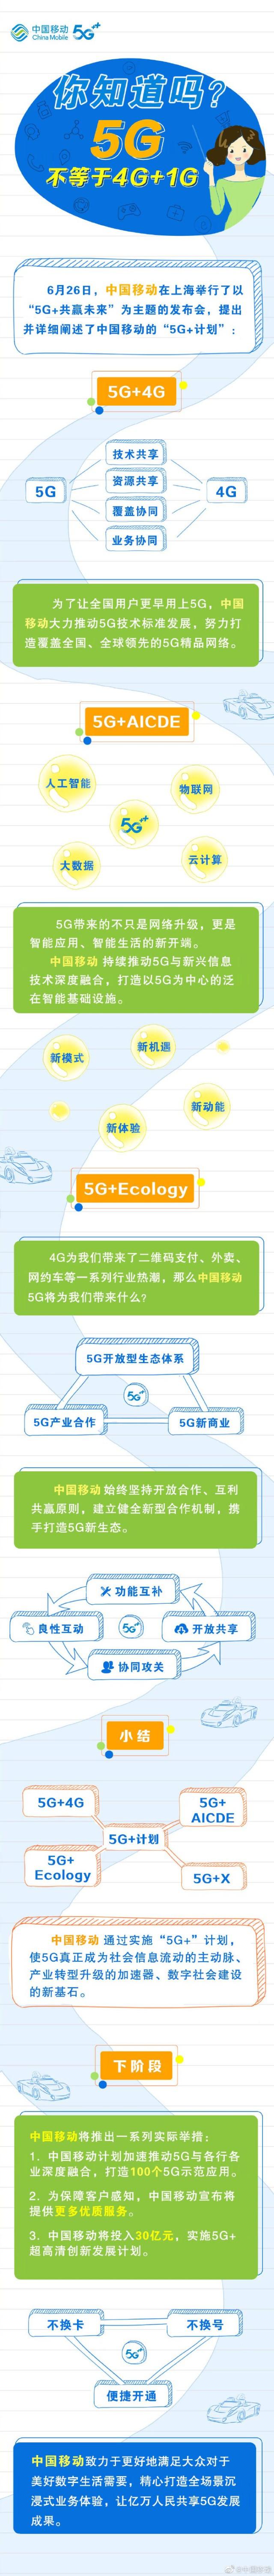 一图了解中国移动“5G+计划”